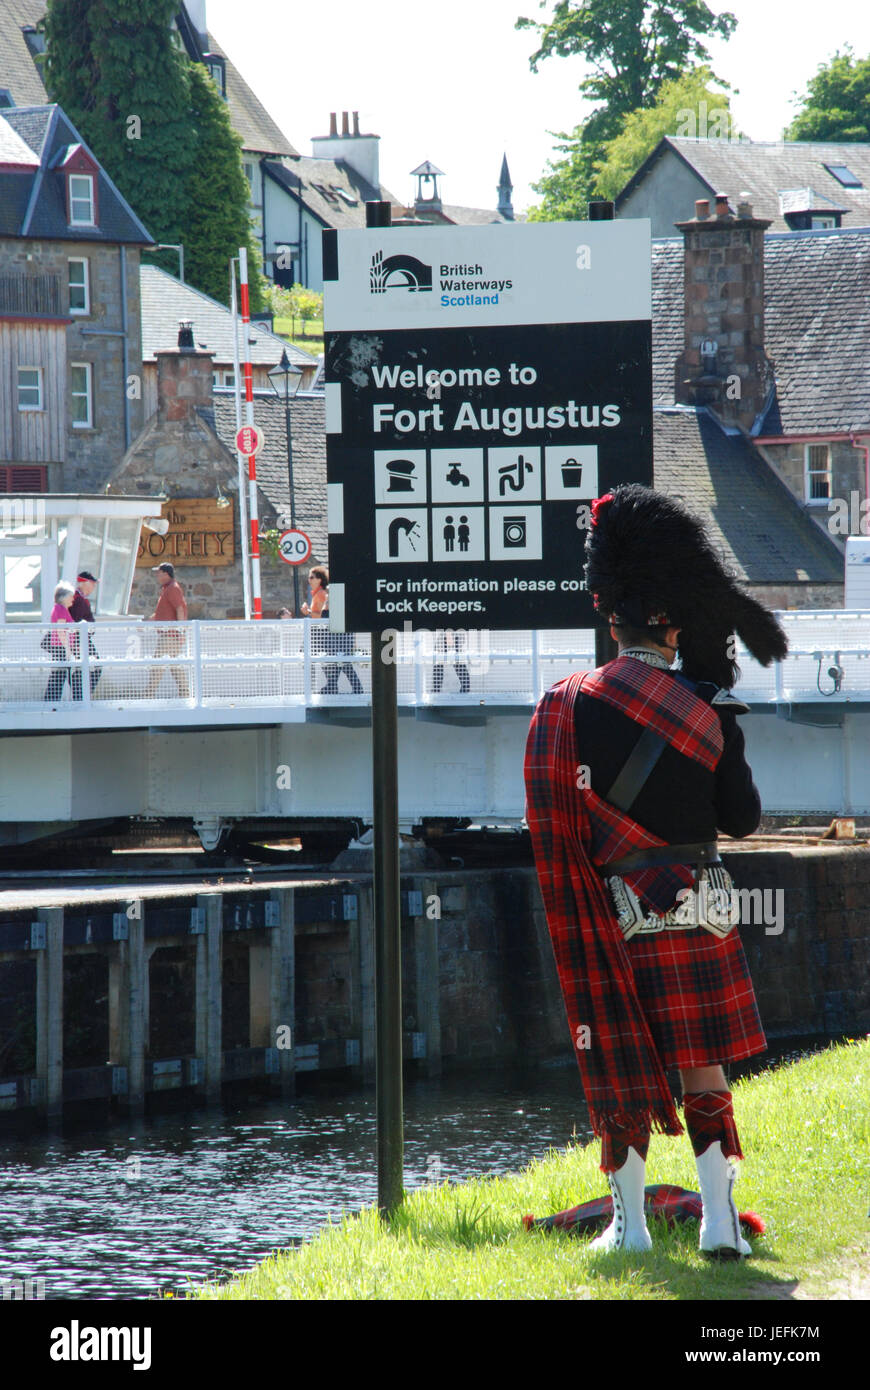 Ein schottischer Dudelsackspieler, eine Pause von Rohrleitungen, Fort Augustus Caledonian Canal Scotland UK Schottland. Aufgenommen Juni 2017 Stockfoto